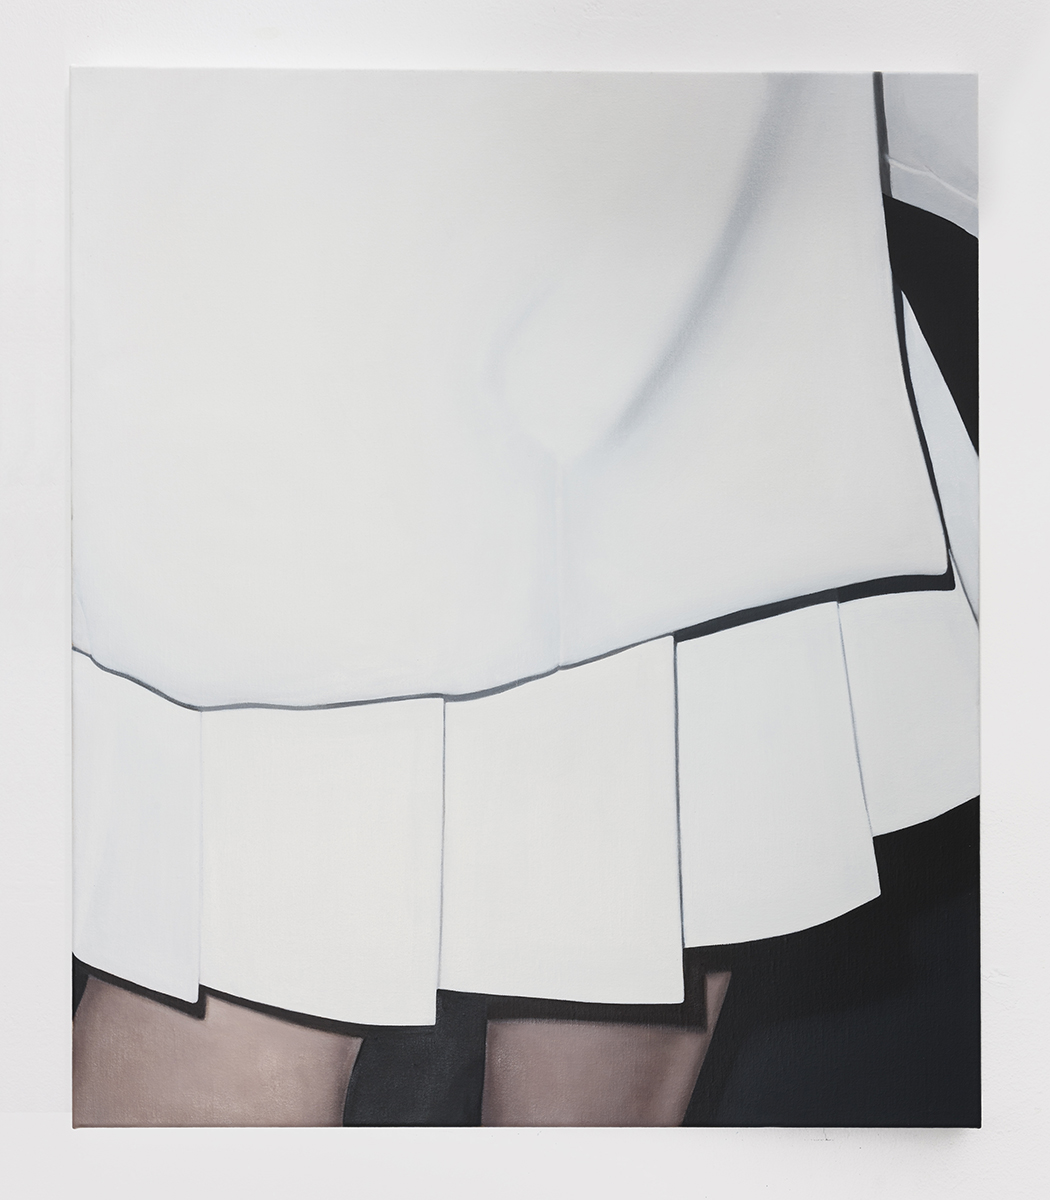  White Dress II | 2018 | oil on linen | 70 x 60 cm | 27.6 x 23.6 in | Photo Lee Welch 